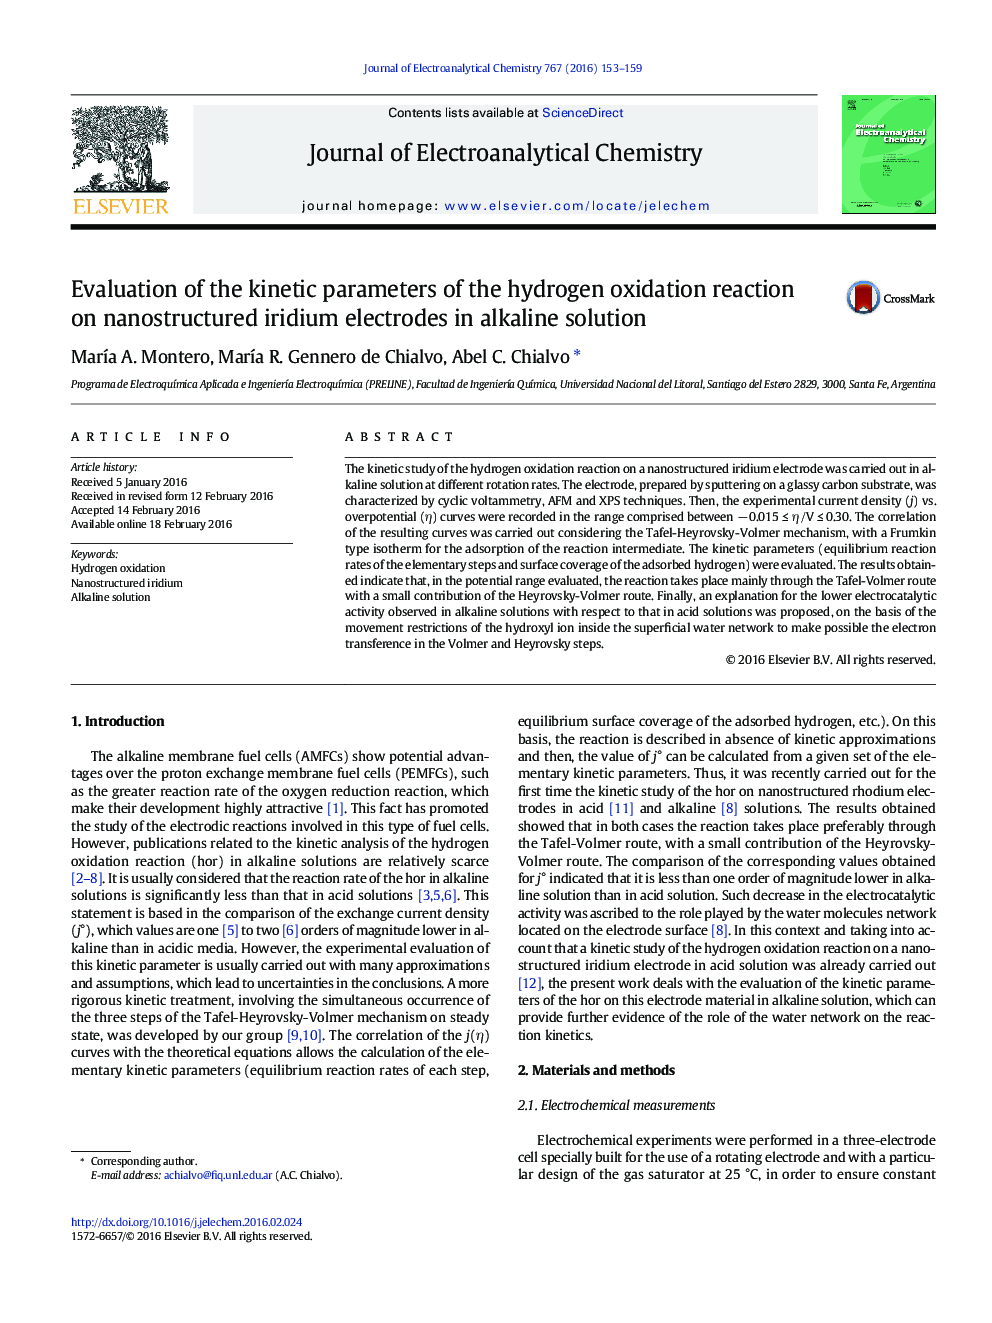 ارزیابی پارامترهای جنبشی واکنش اکسیداسیون هیدروژن بر روی الکترودهای نانو ساختار ایریدیوم در محلول قلیایی 